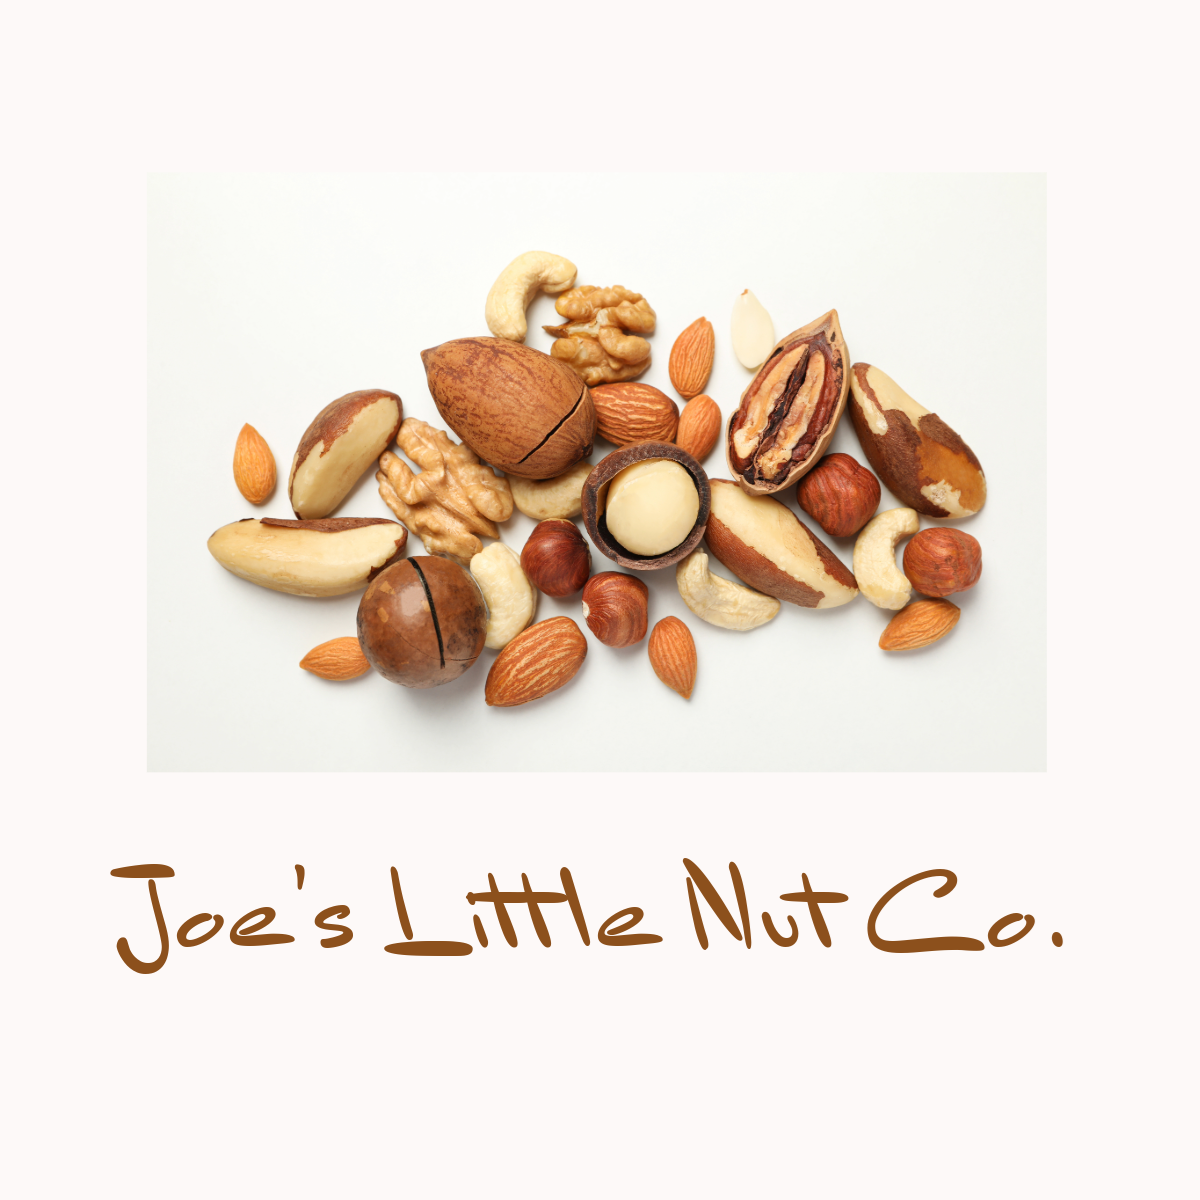 Joe's Little Nut Company